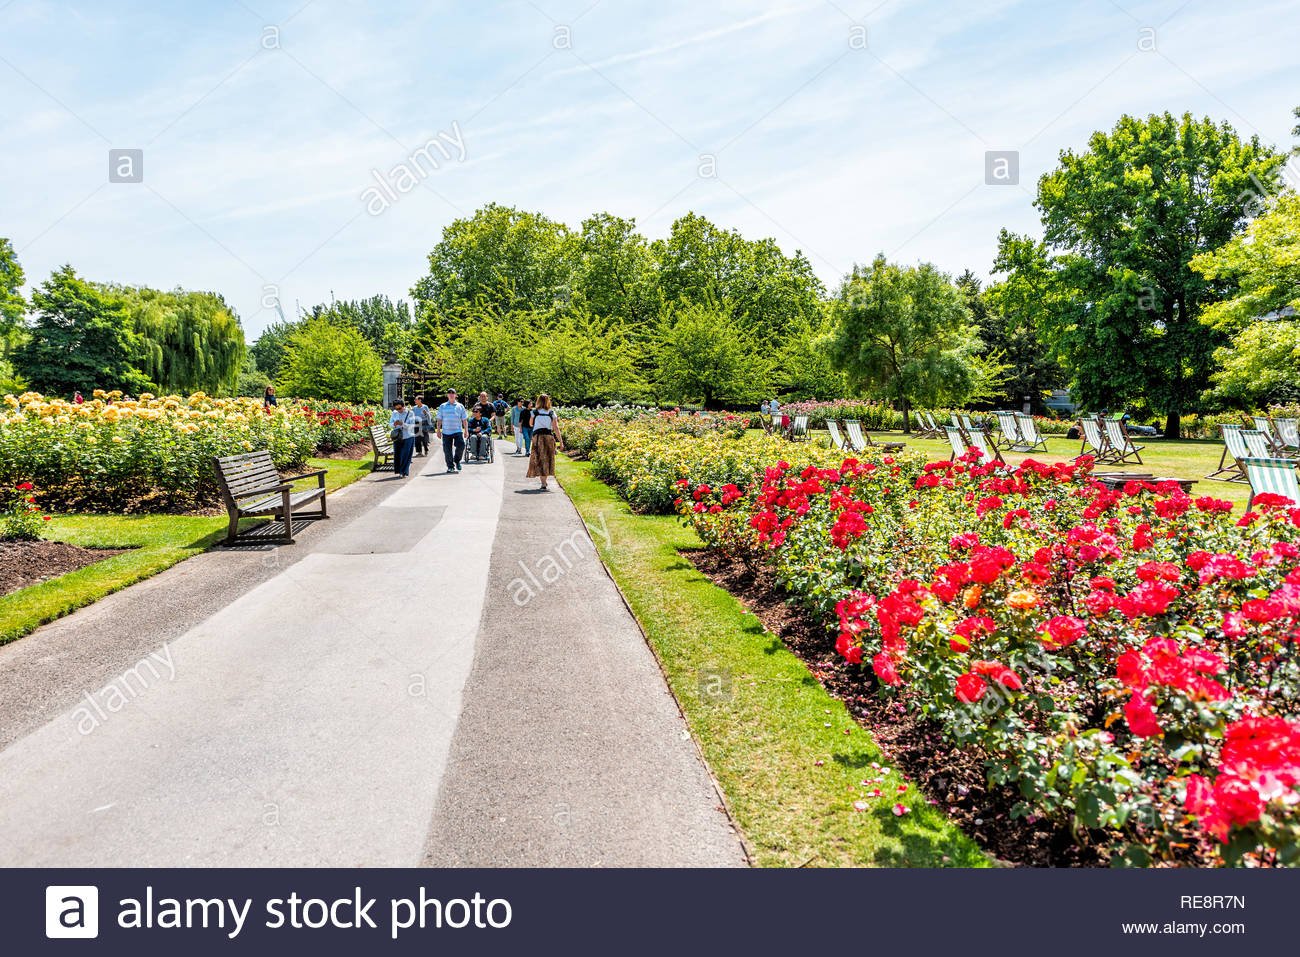 St. Regent’s Park Sovereign Mary’s Rose Gardens